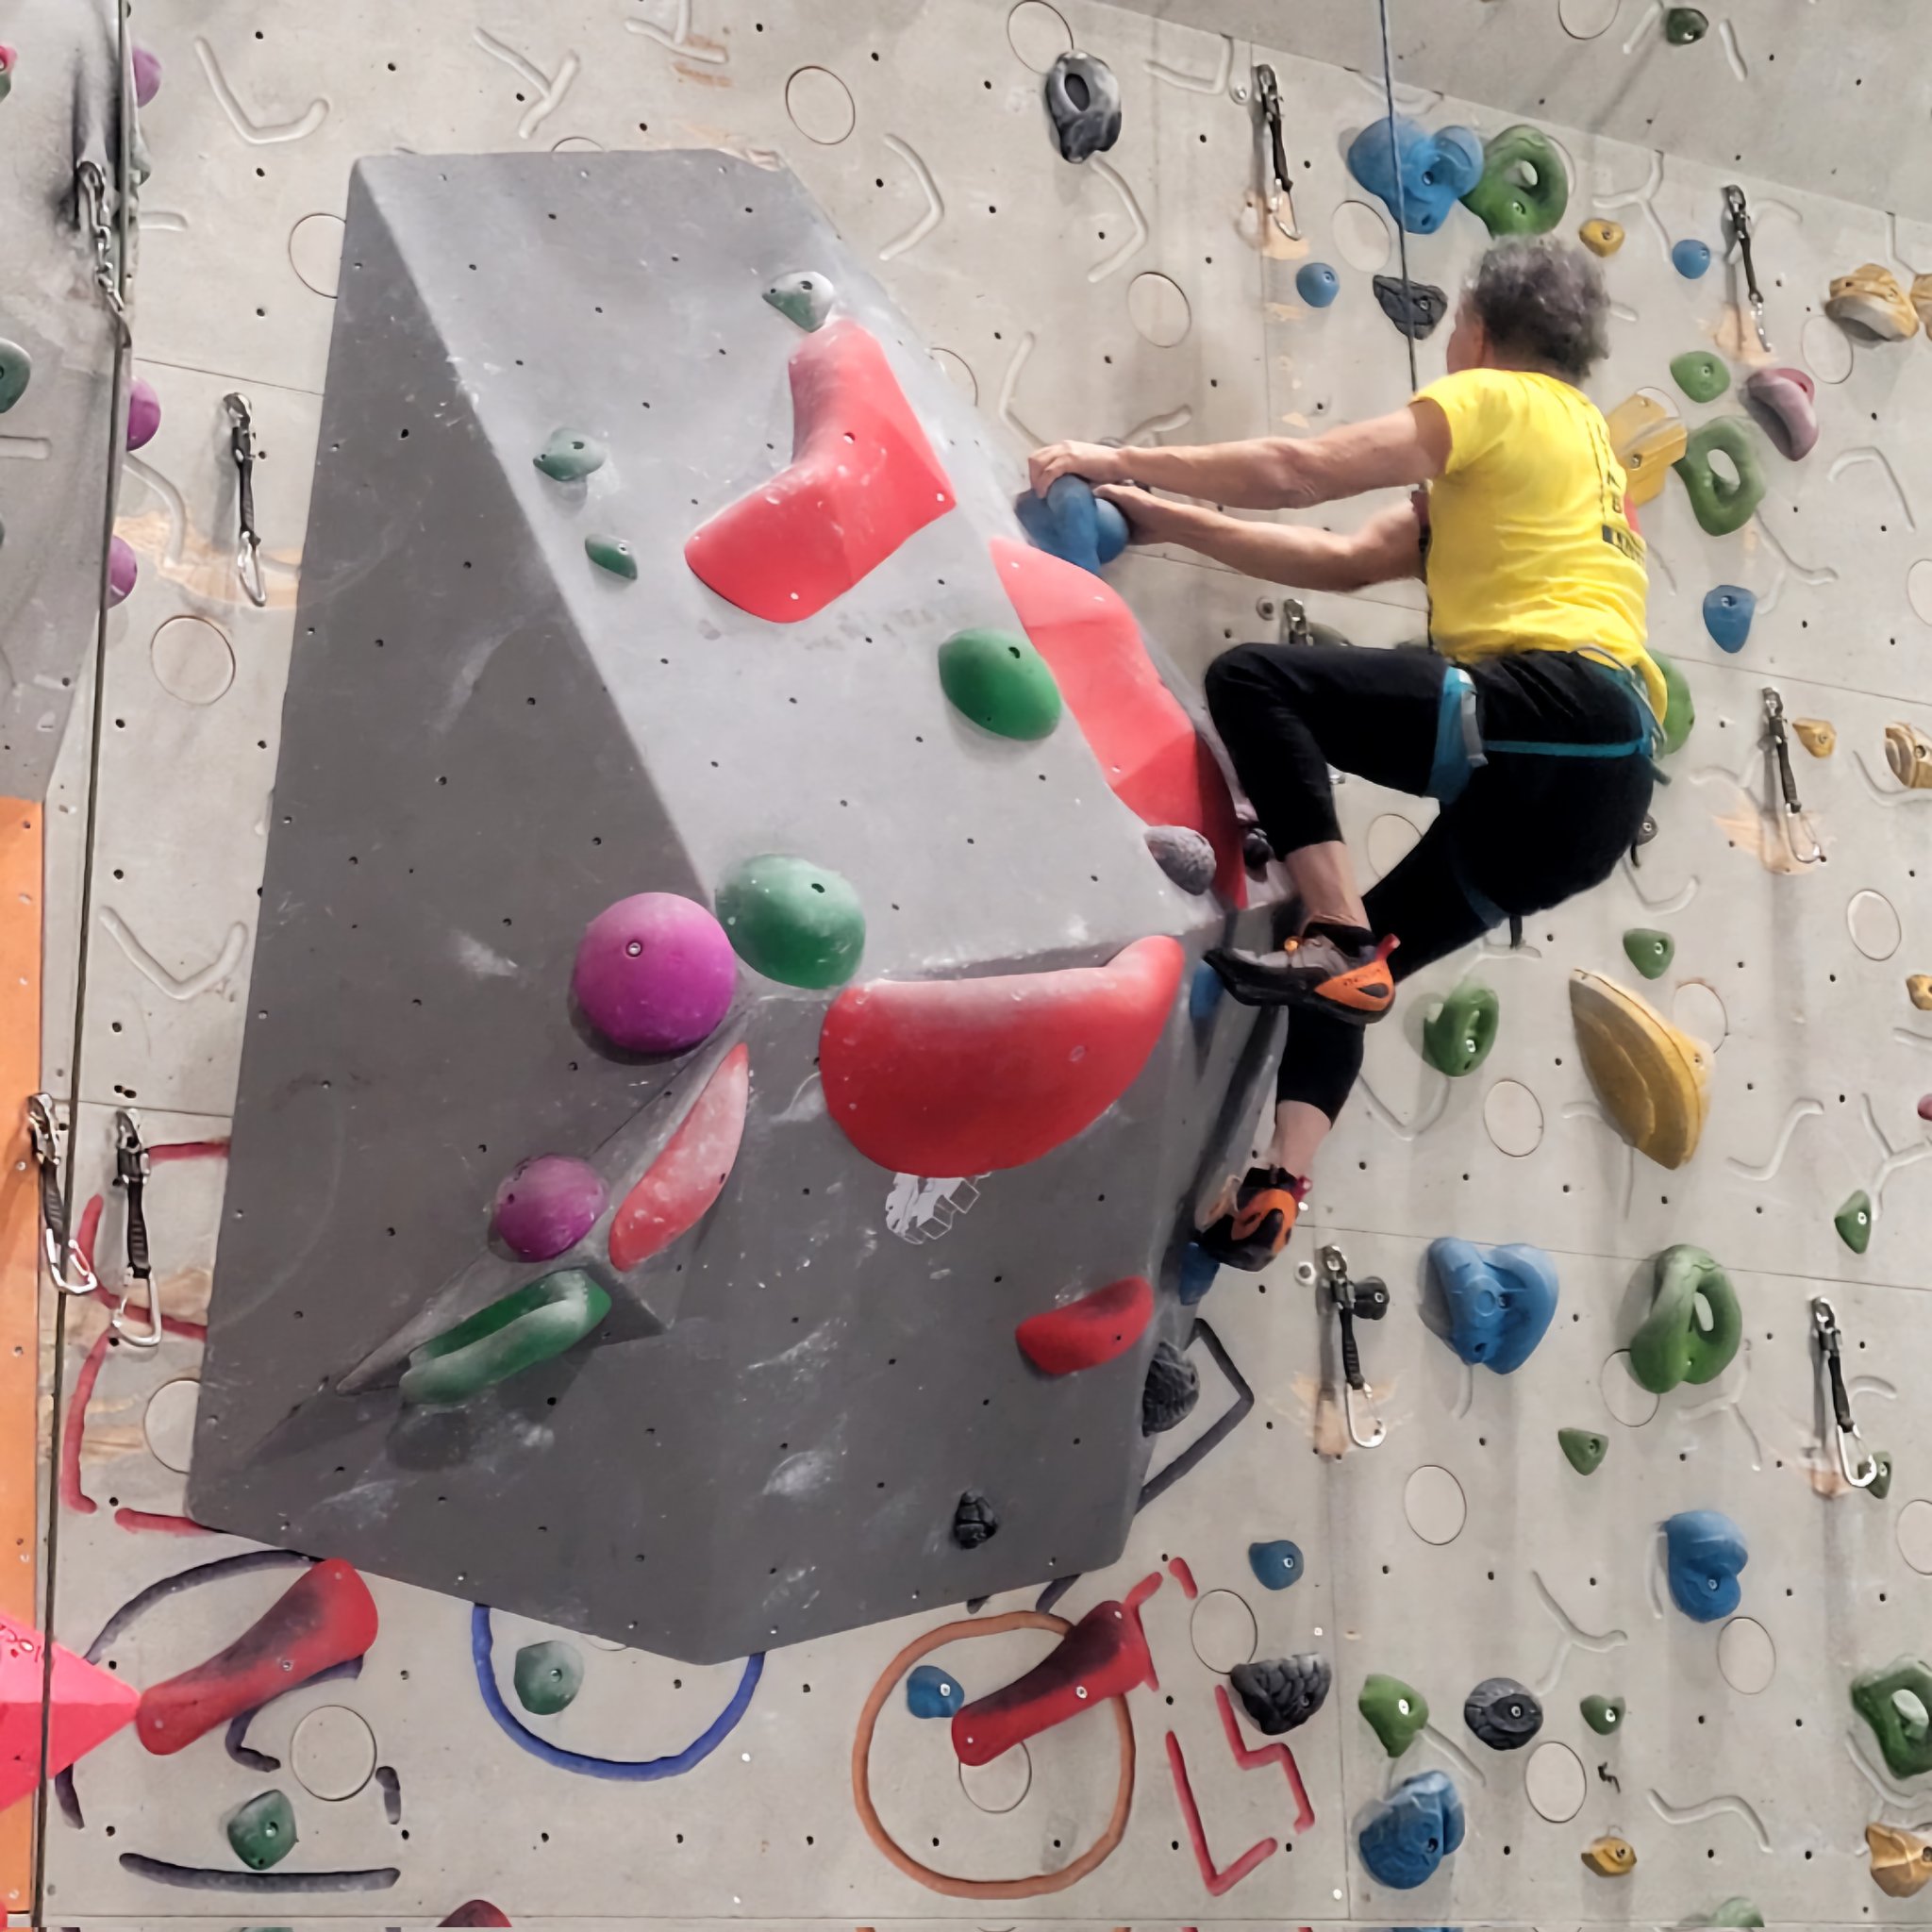 Gervasio Lamas MD on X: Indoor rock climbing gym in Zurich. Not